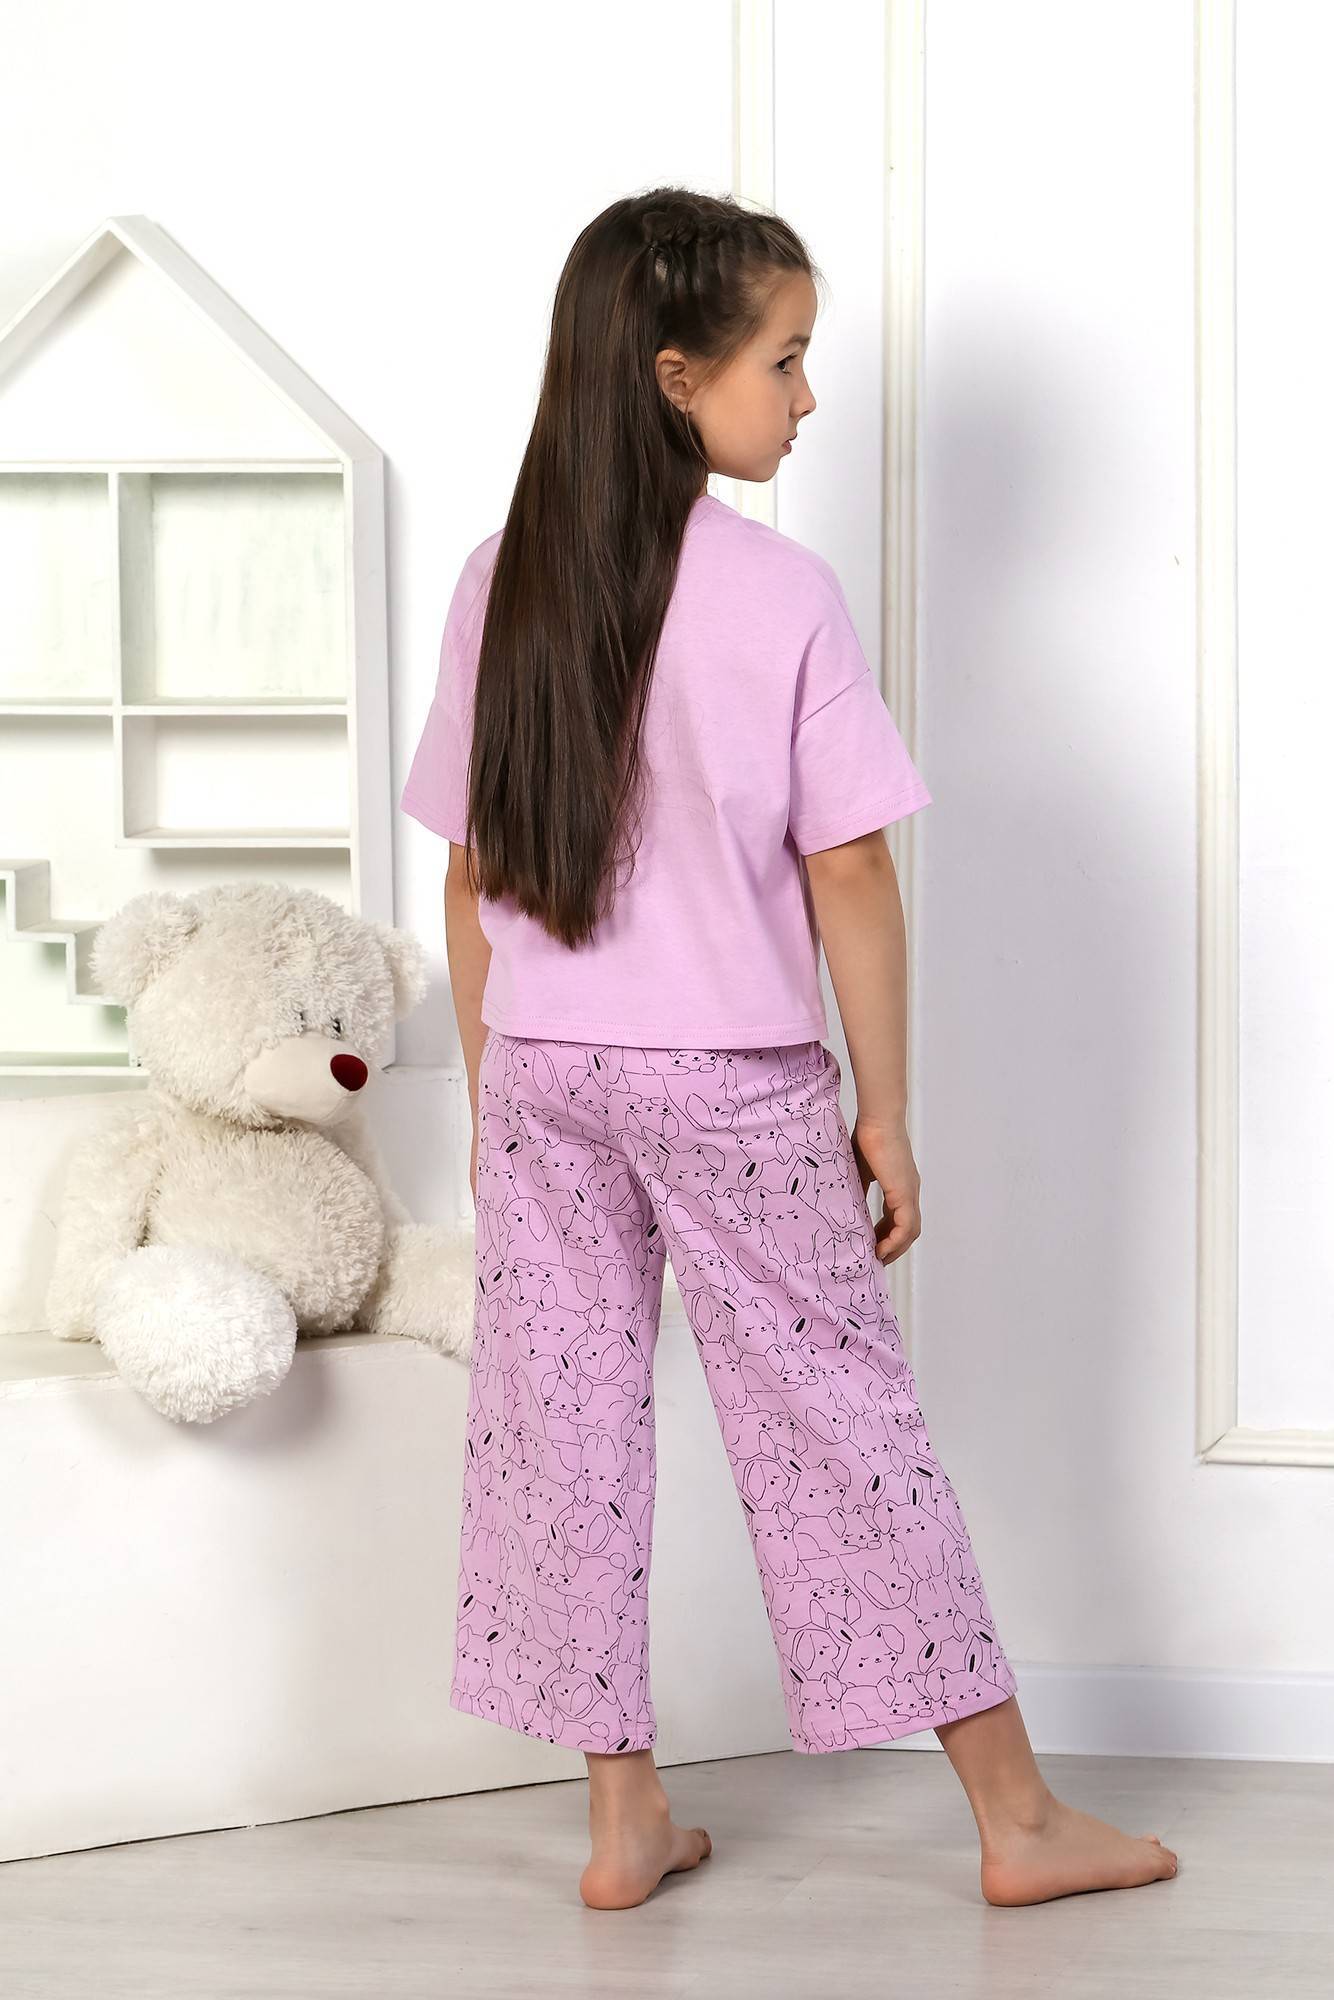 Скачать выкройку детской пижамы для девочки или мальчика